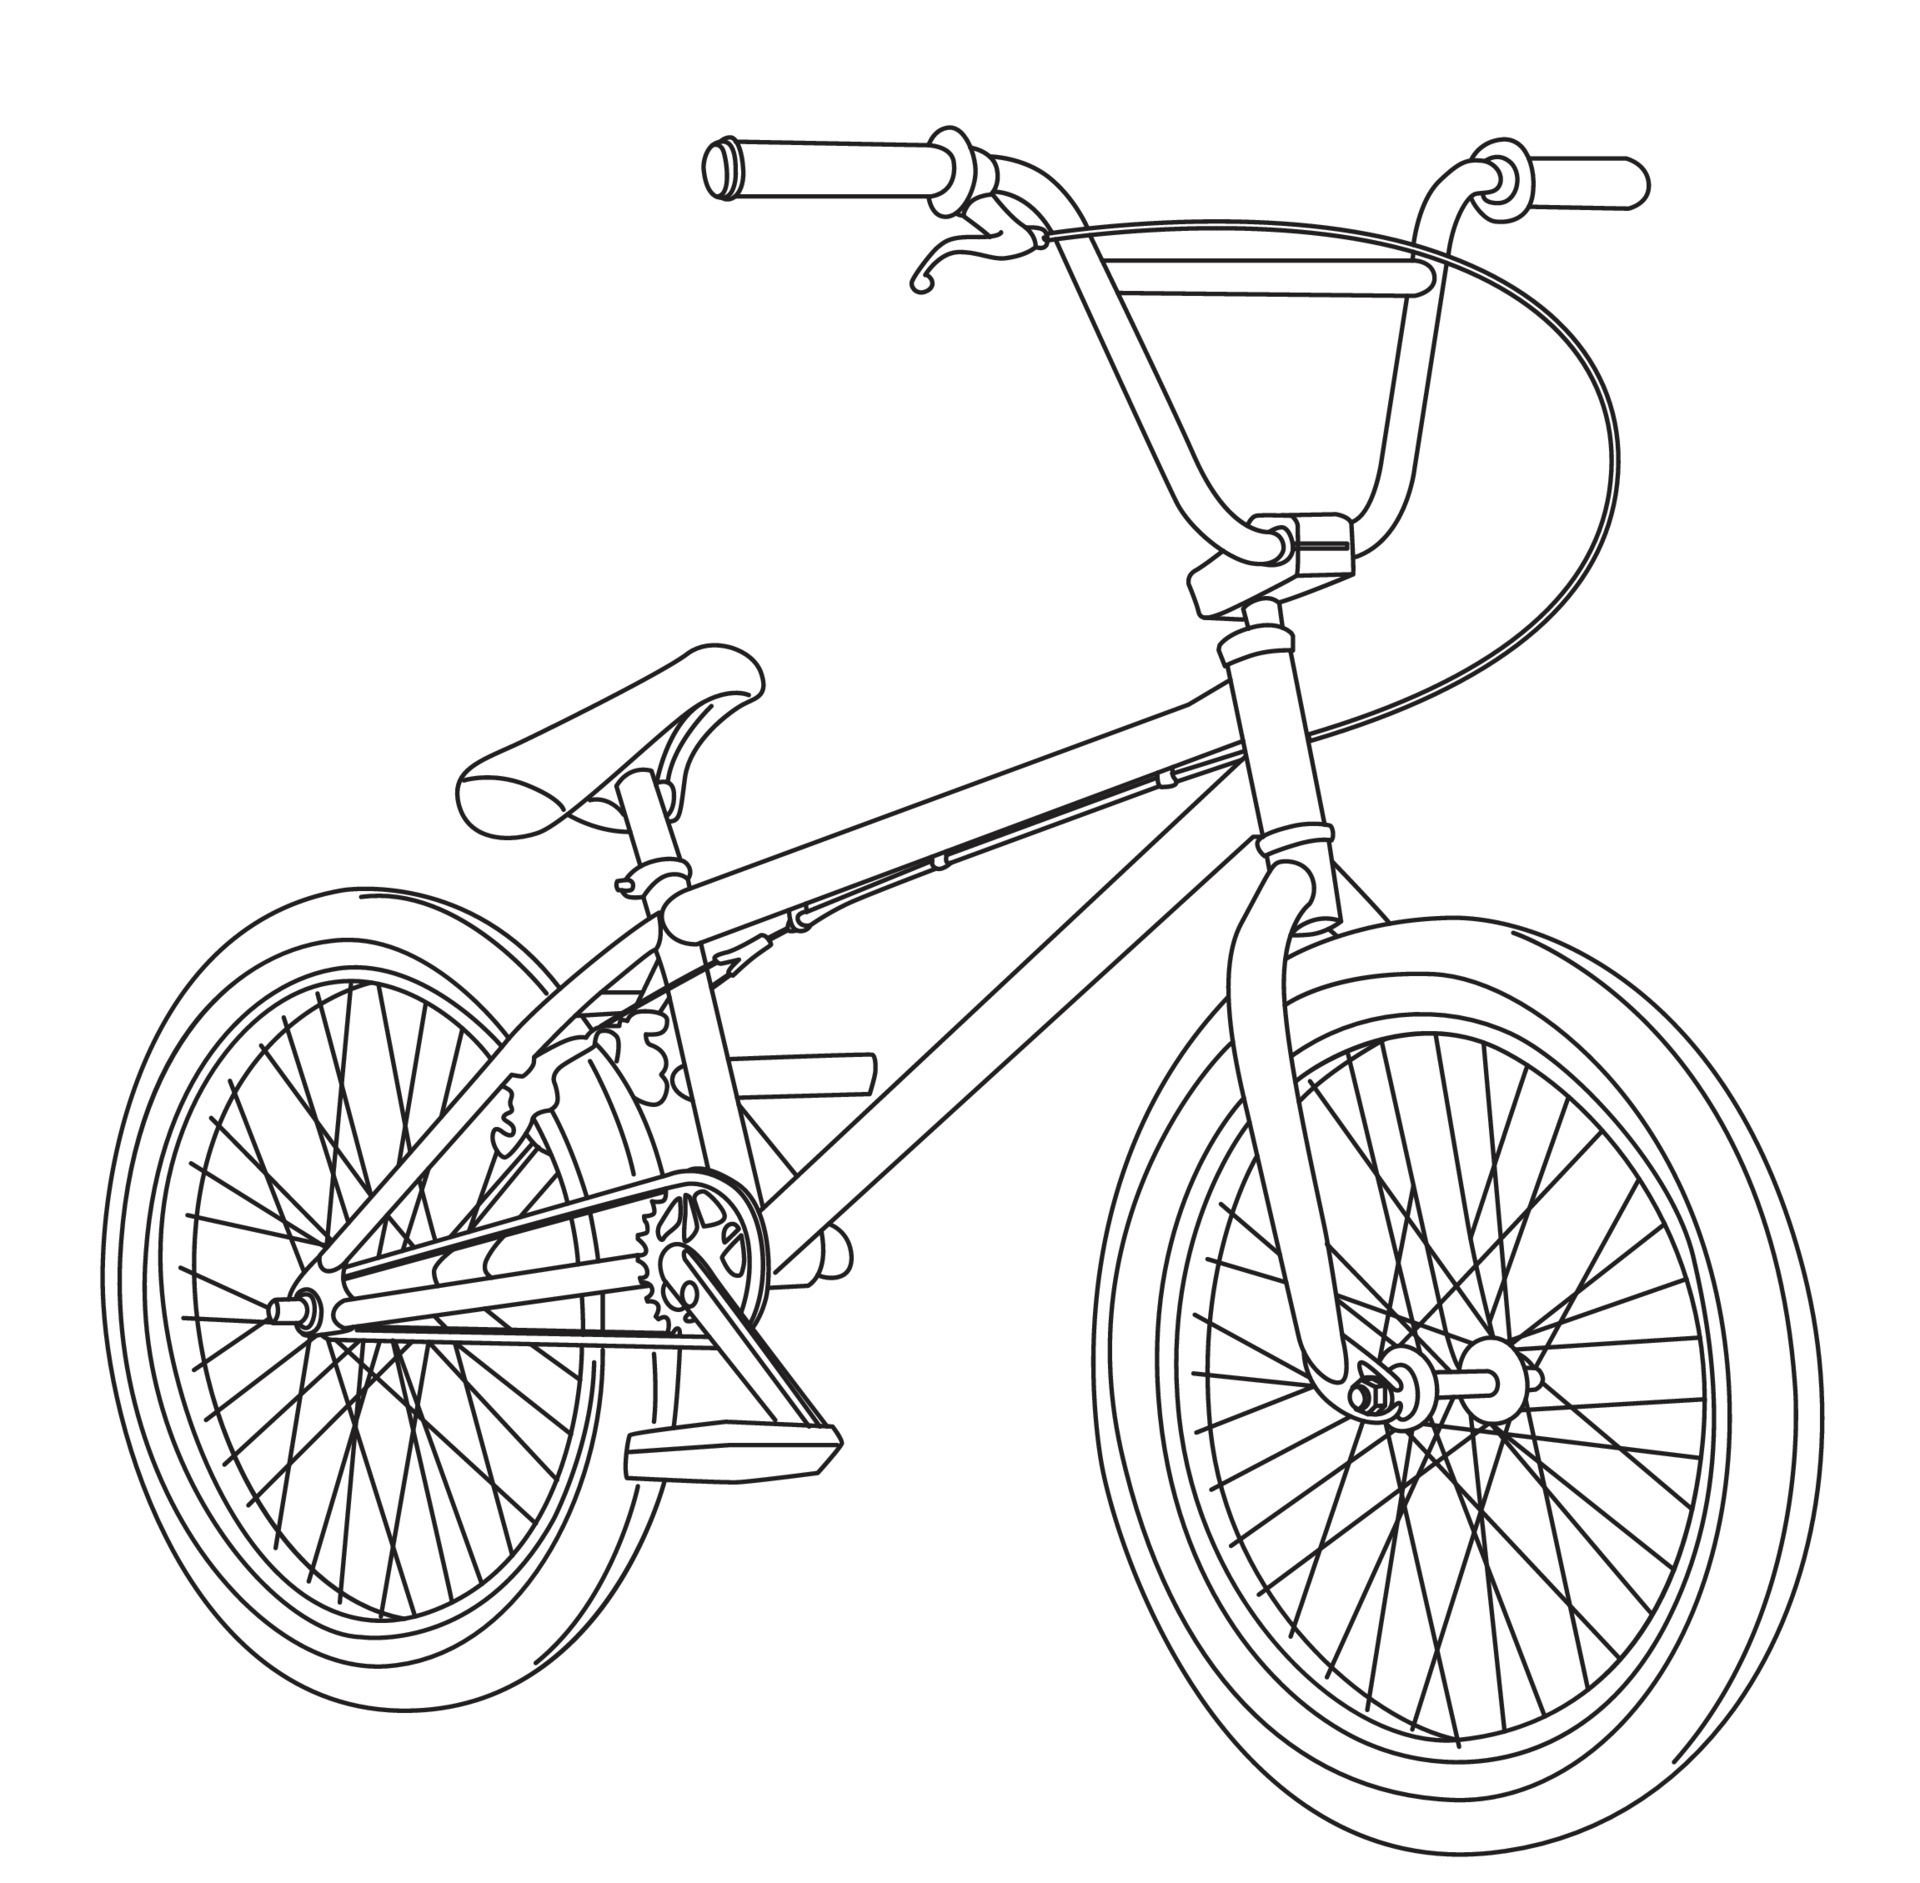 YZF R6 Bike Sketch Art - Yamaha - Sticker | TeePublic-as247.edu.vn